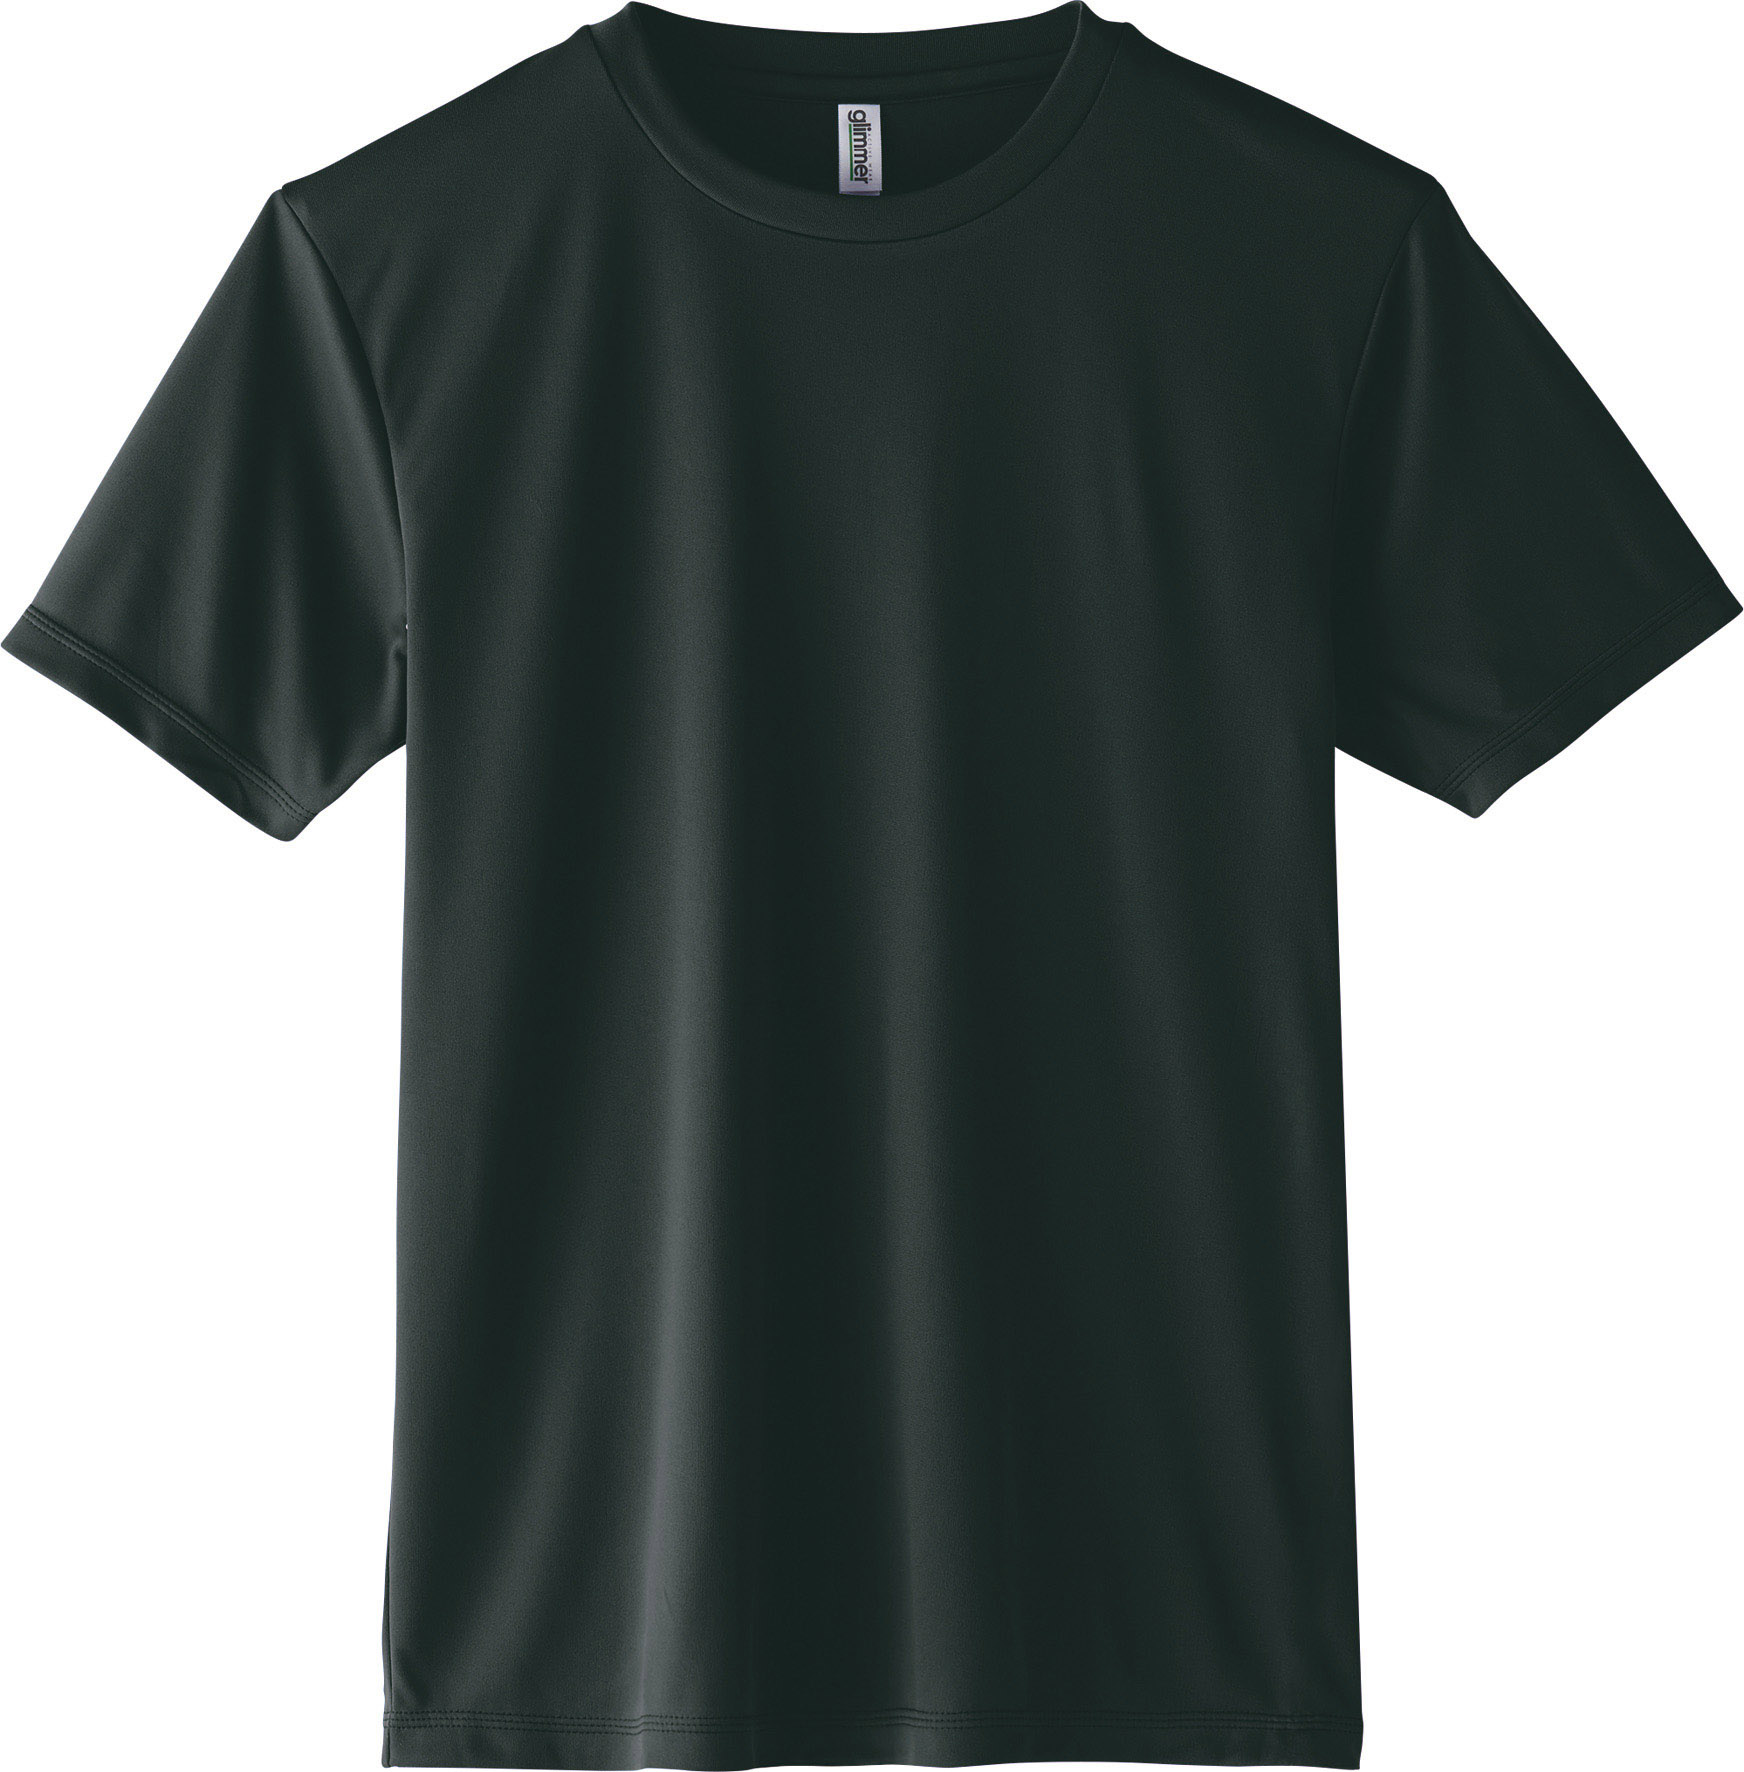 大きいサイズ ドライ 半袖 Tシャツ 3.5オンス 薄手 UVカット グリマー glimmer 00...